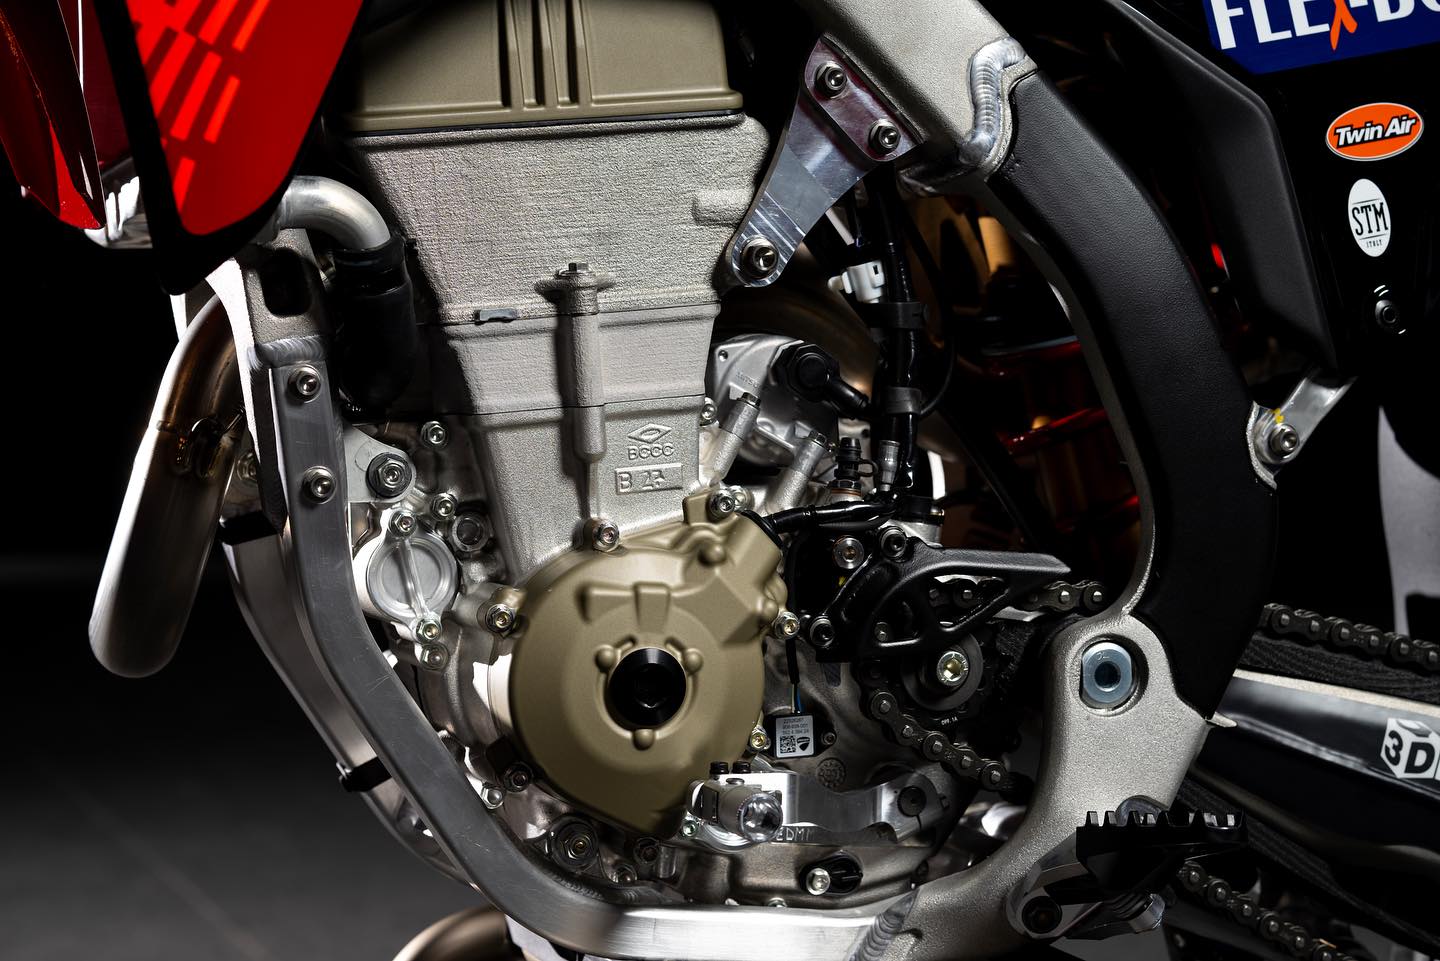 Il tanto atteso motore Desmo450 MX di Ducati